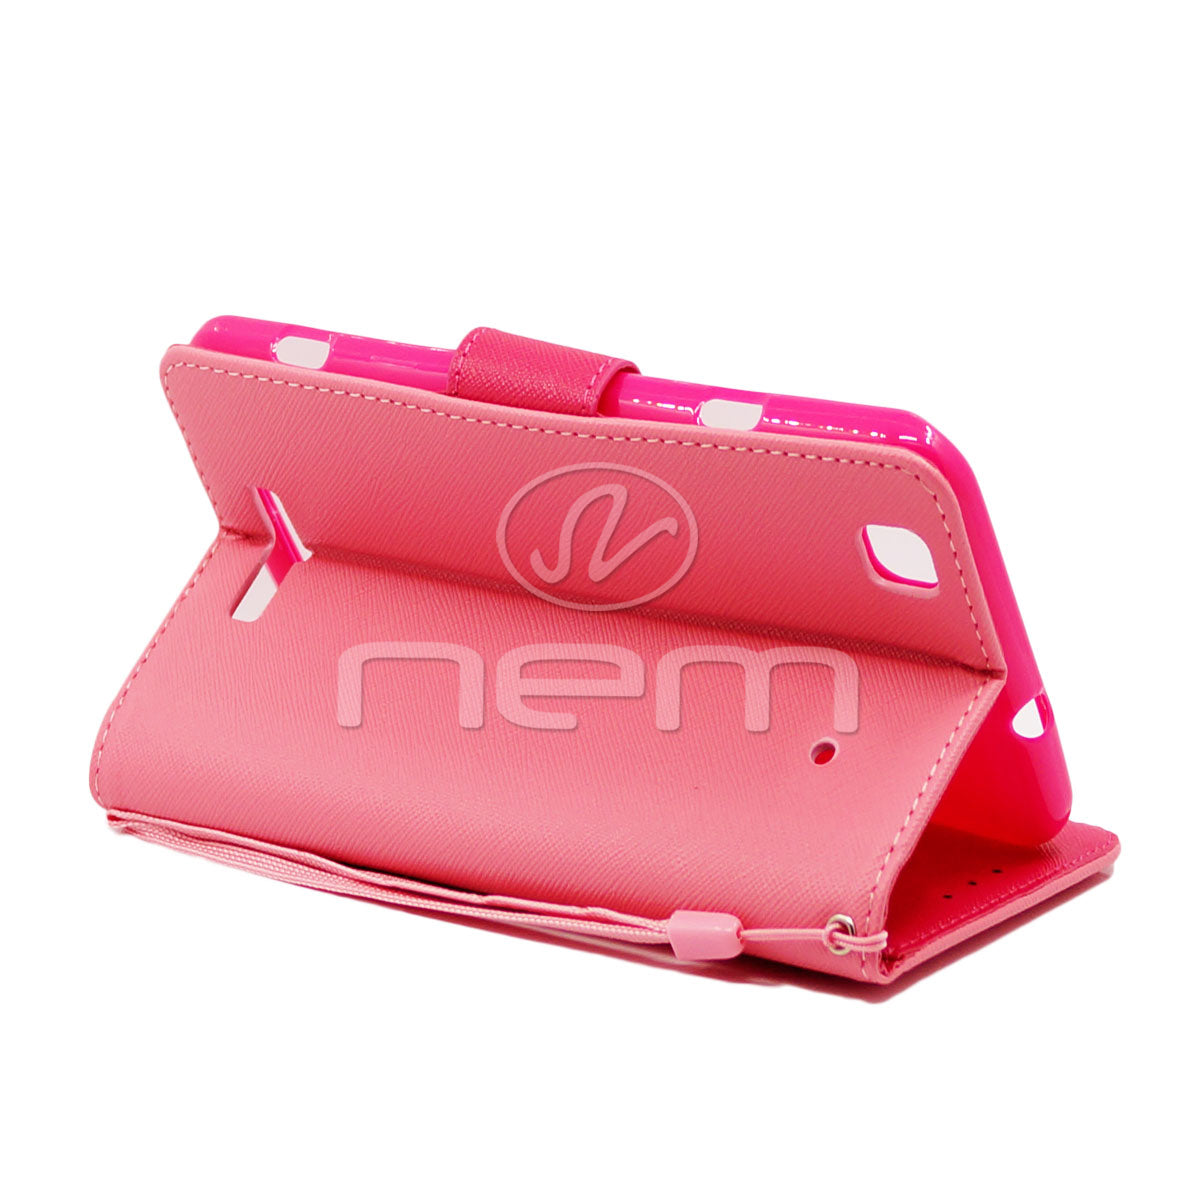 ZTE Max Plus N9520 WCFC09 Pink/Black